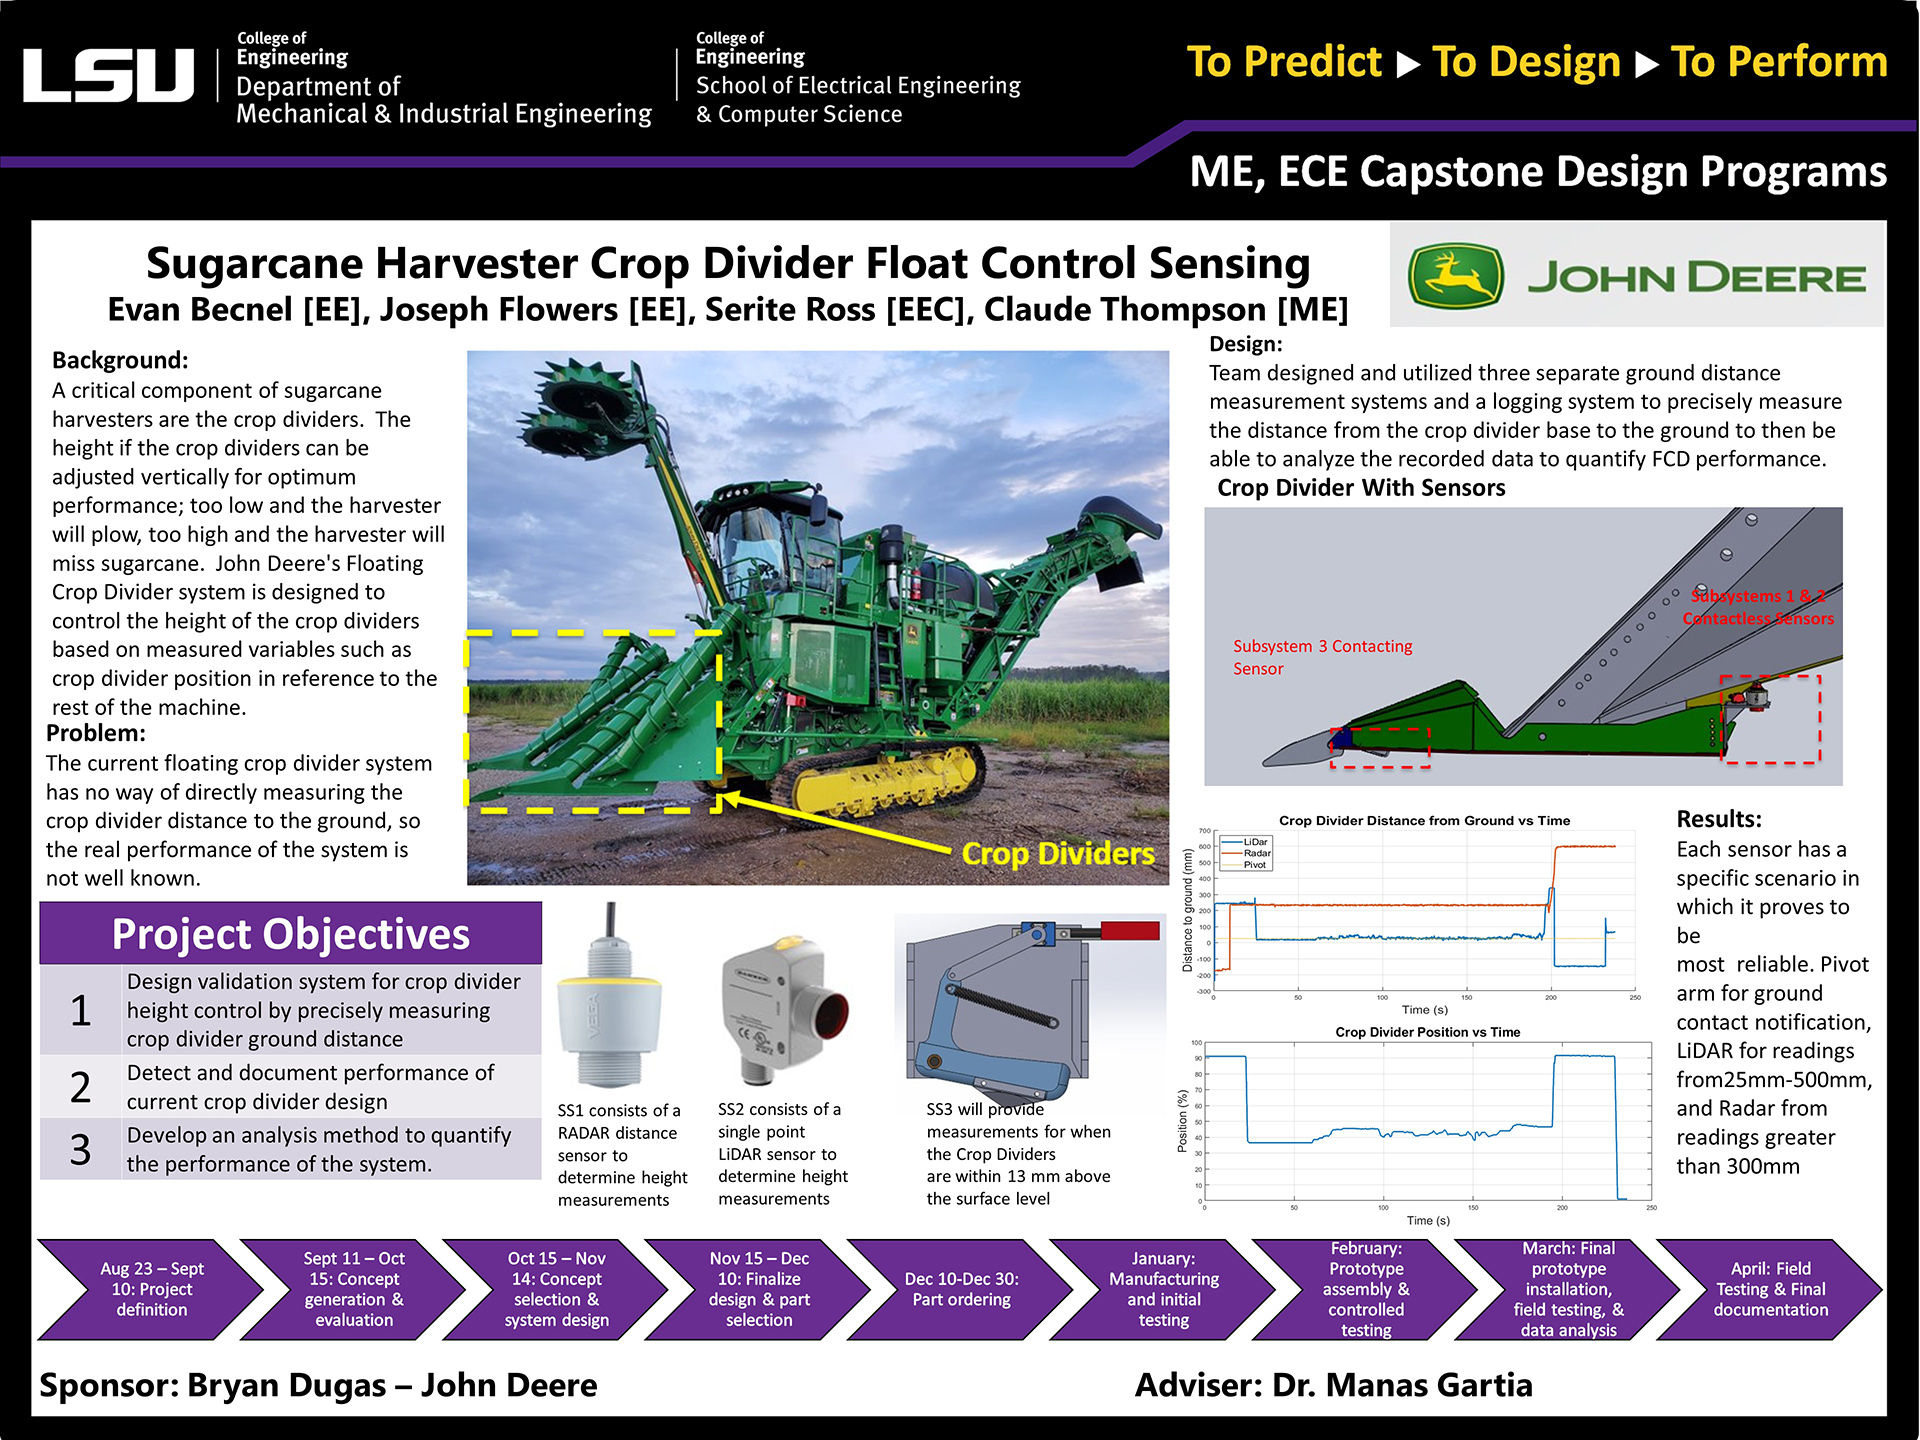 Project 29: Sugarcane Harvester Crop Divider Float Control Sensing (2022)